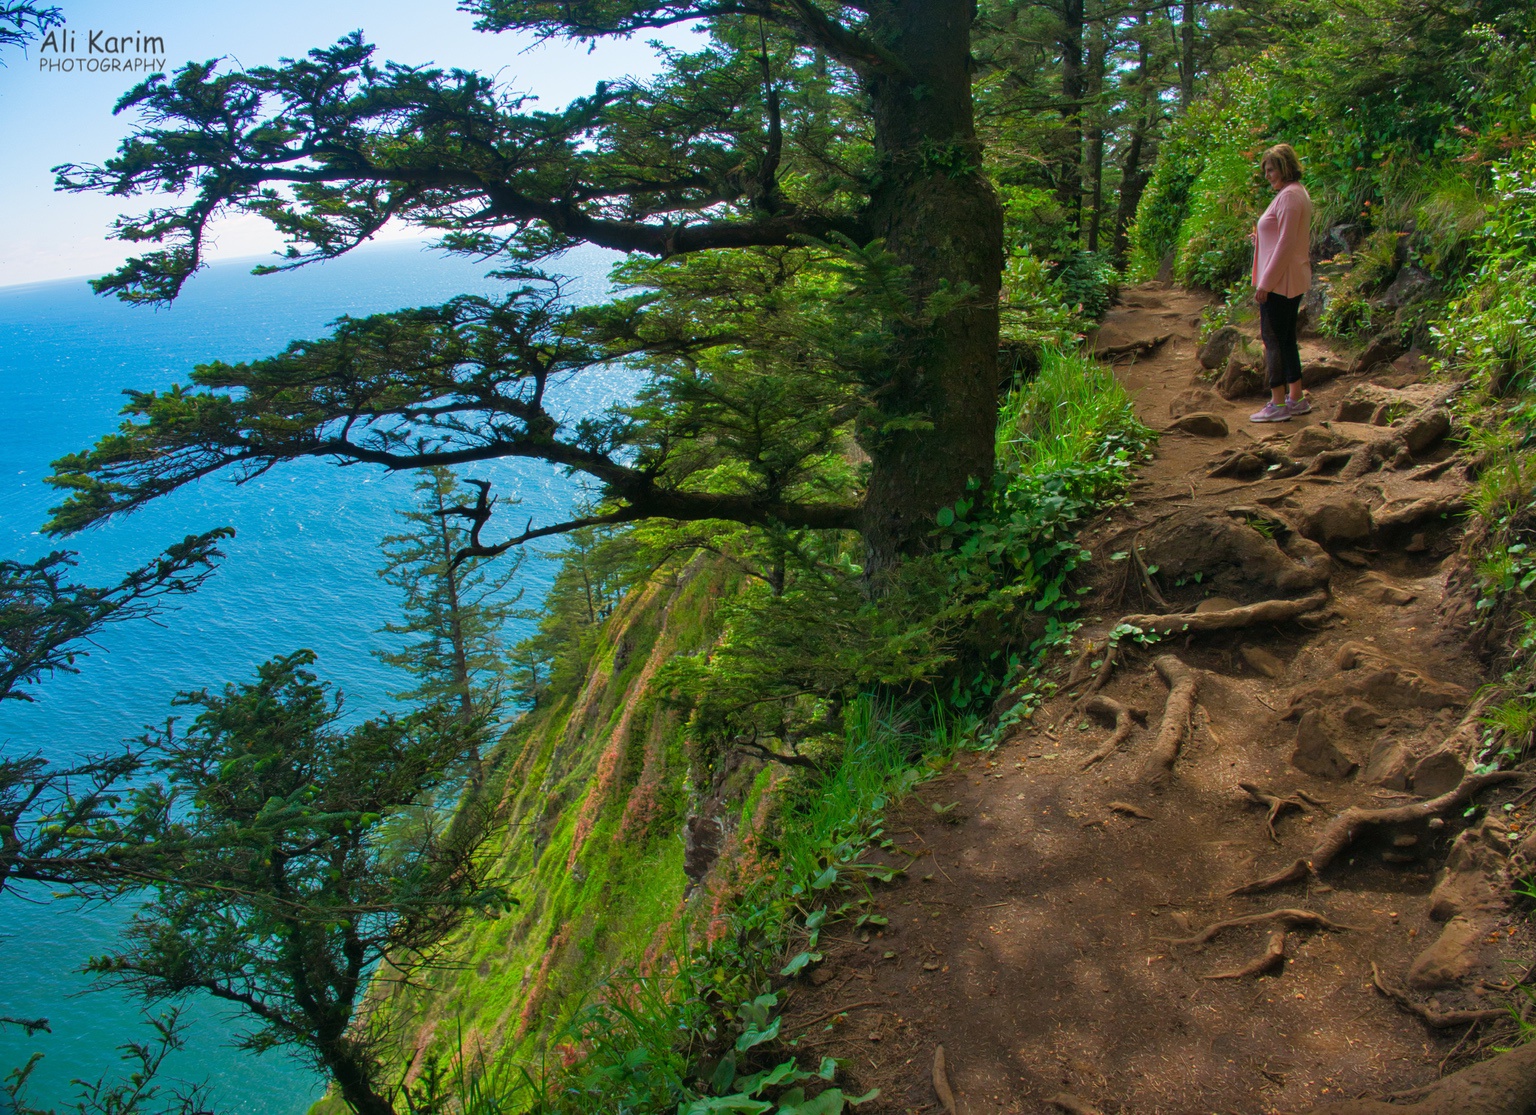 Oregon Coast Hwy 101 Trail was along steep cliffsides